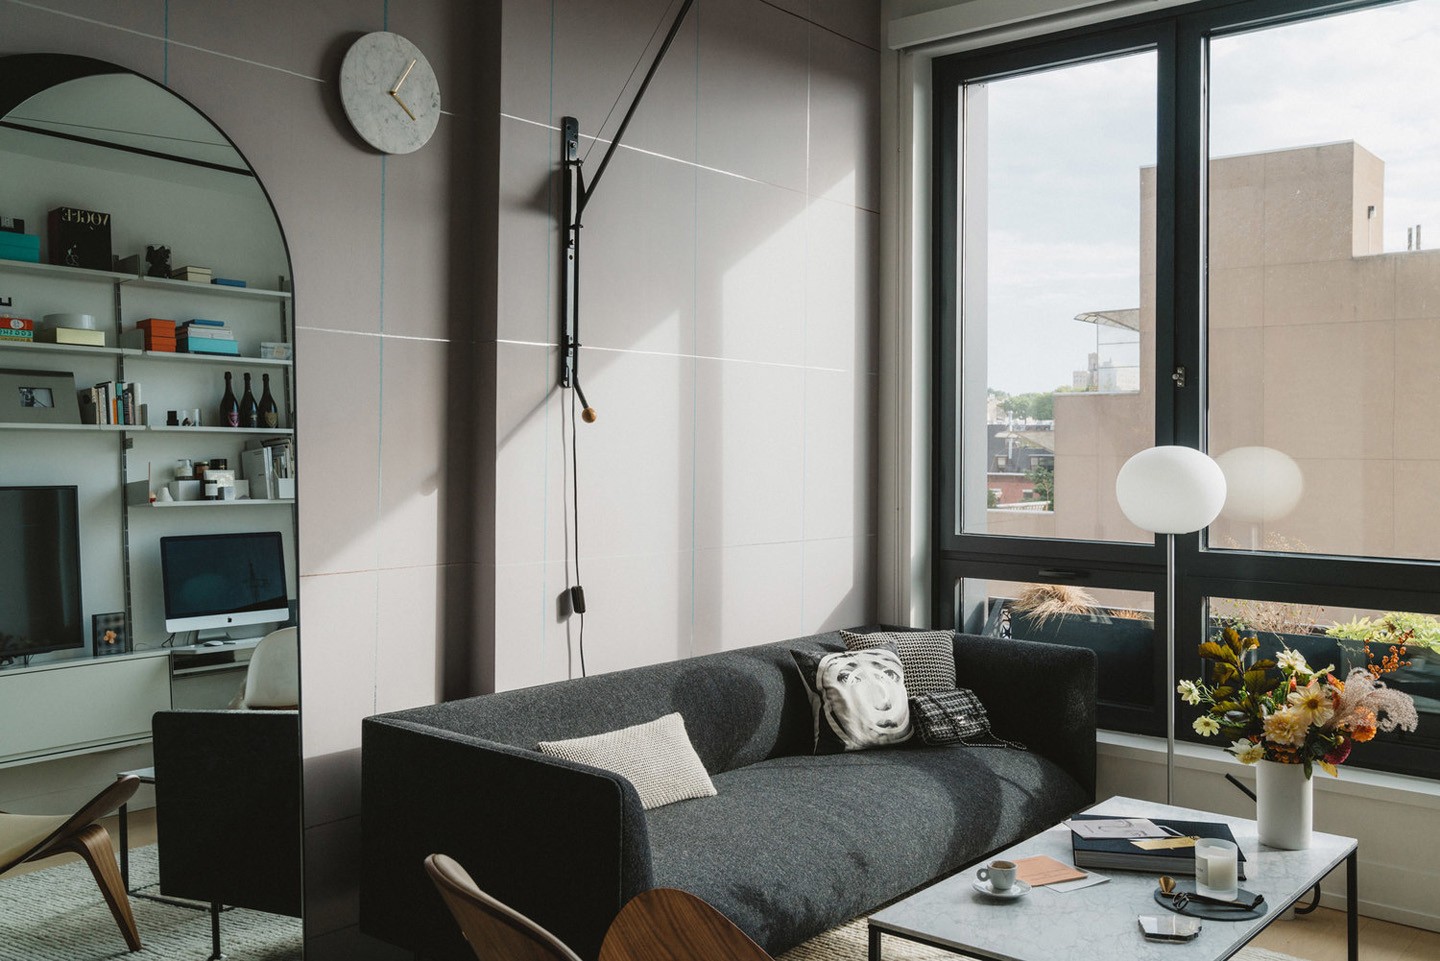 Décor do dia: papel de parede minimalista na sala de estar (Foto: Erica Choi e Hoon Kim/Divulgação)